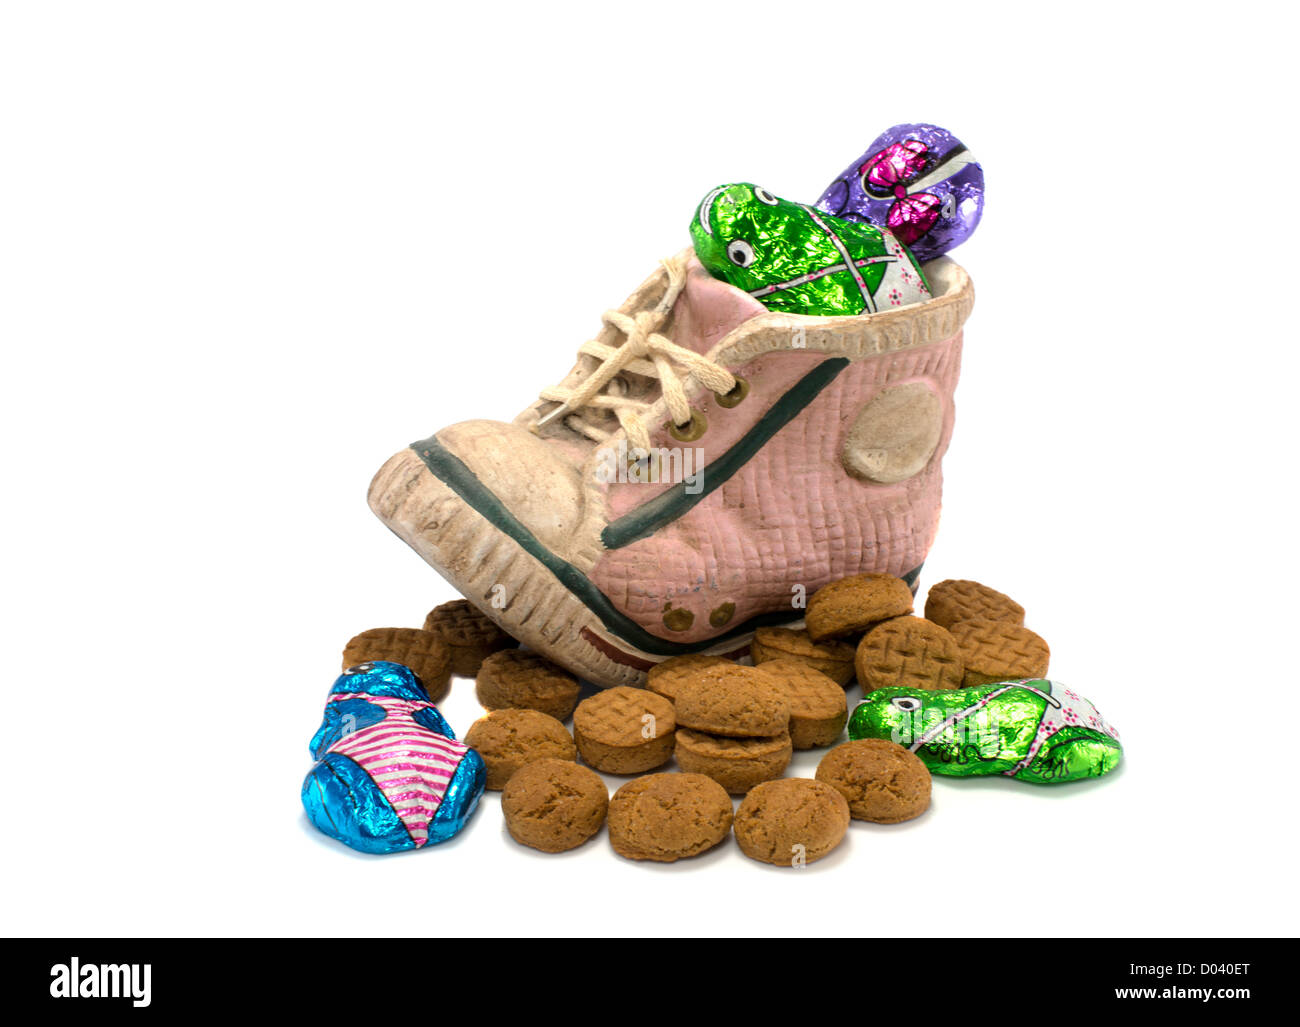 Scarpe per bambini con pepernoten e altre caramelle per l'olandese sinterklaas party Foto Stock